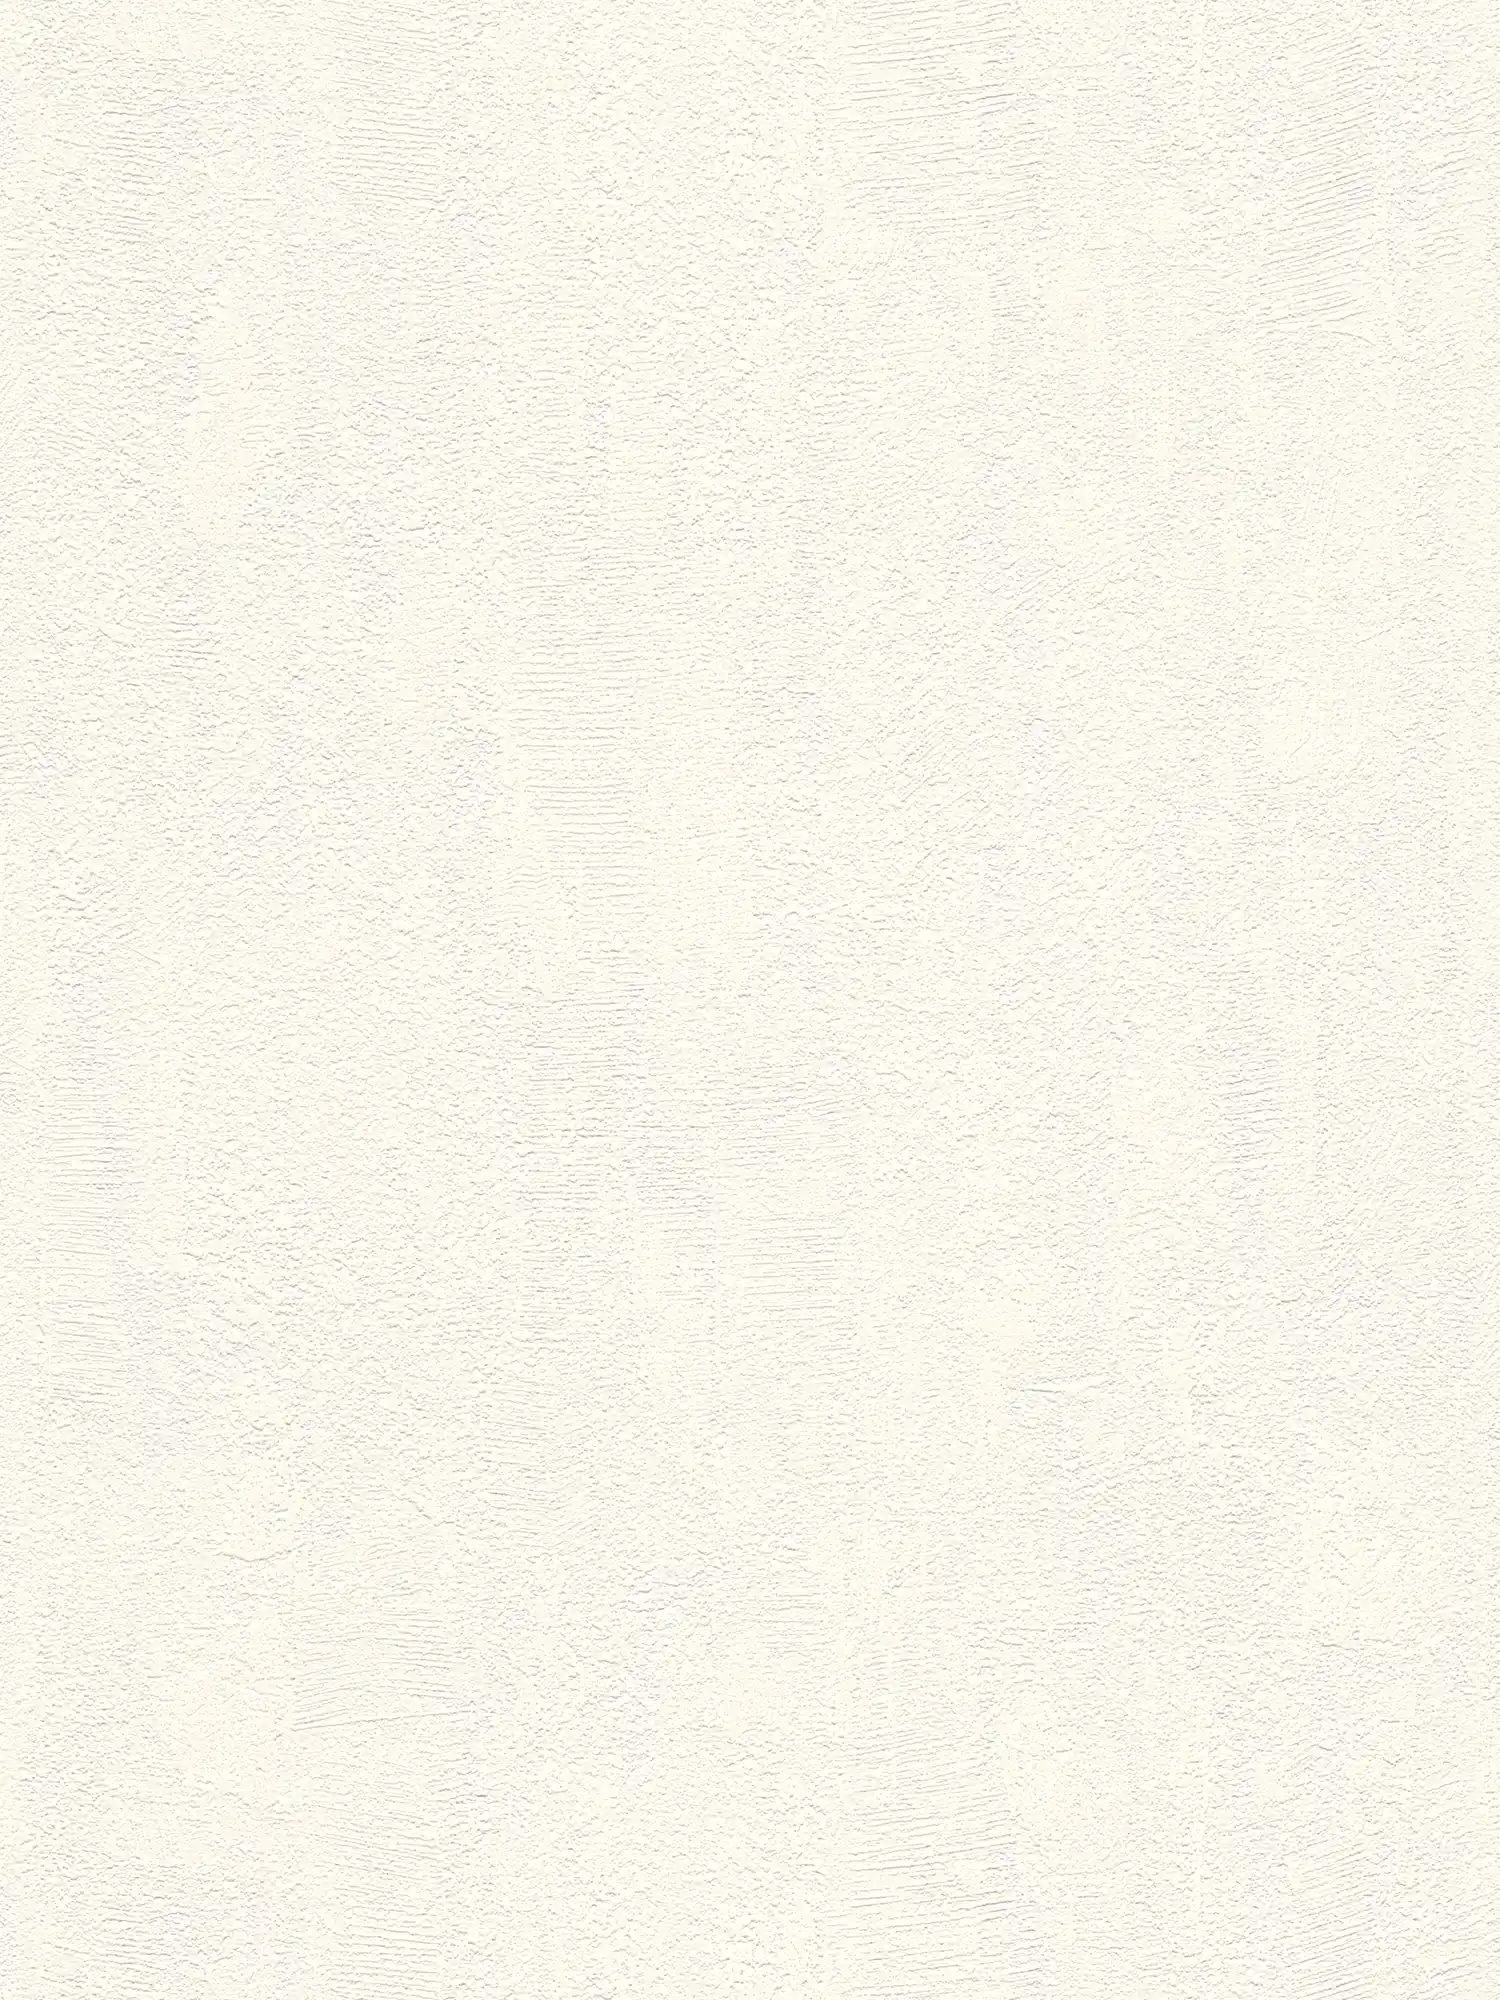 papier peint en papier structuré à l'aspect crépi fin - blanc, crème
